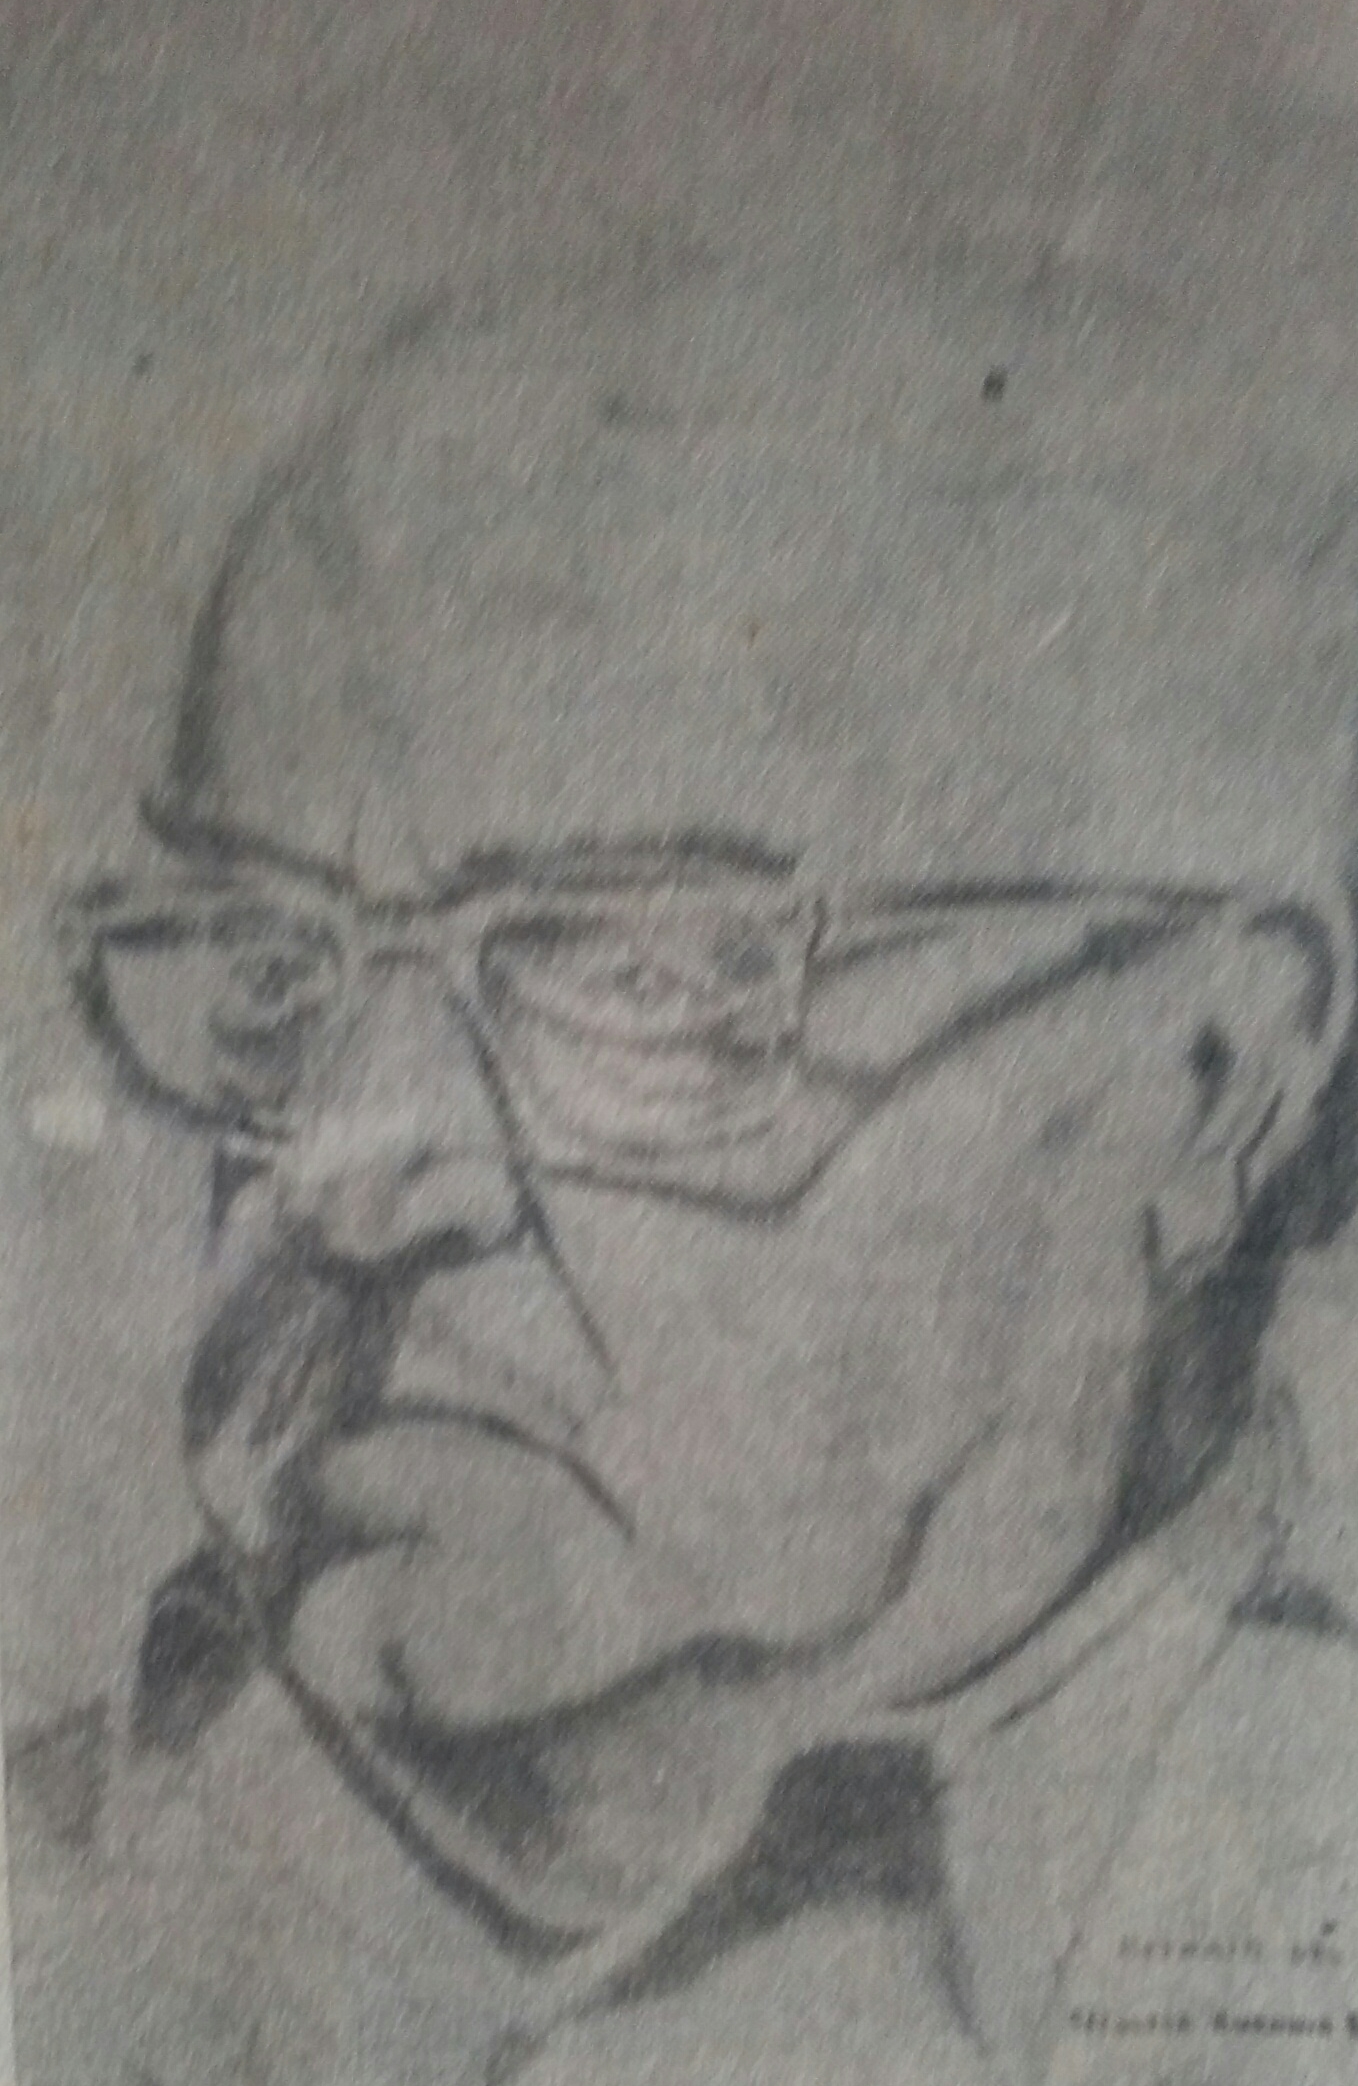 Retrato a lápiz, del Prof. Antonio Bardi, realizado en 1980, por el artista plástico e investigador de nuestro pasado lugareño, Juan Antonio Larrea.